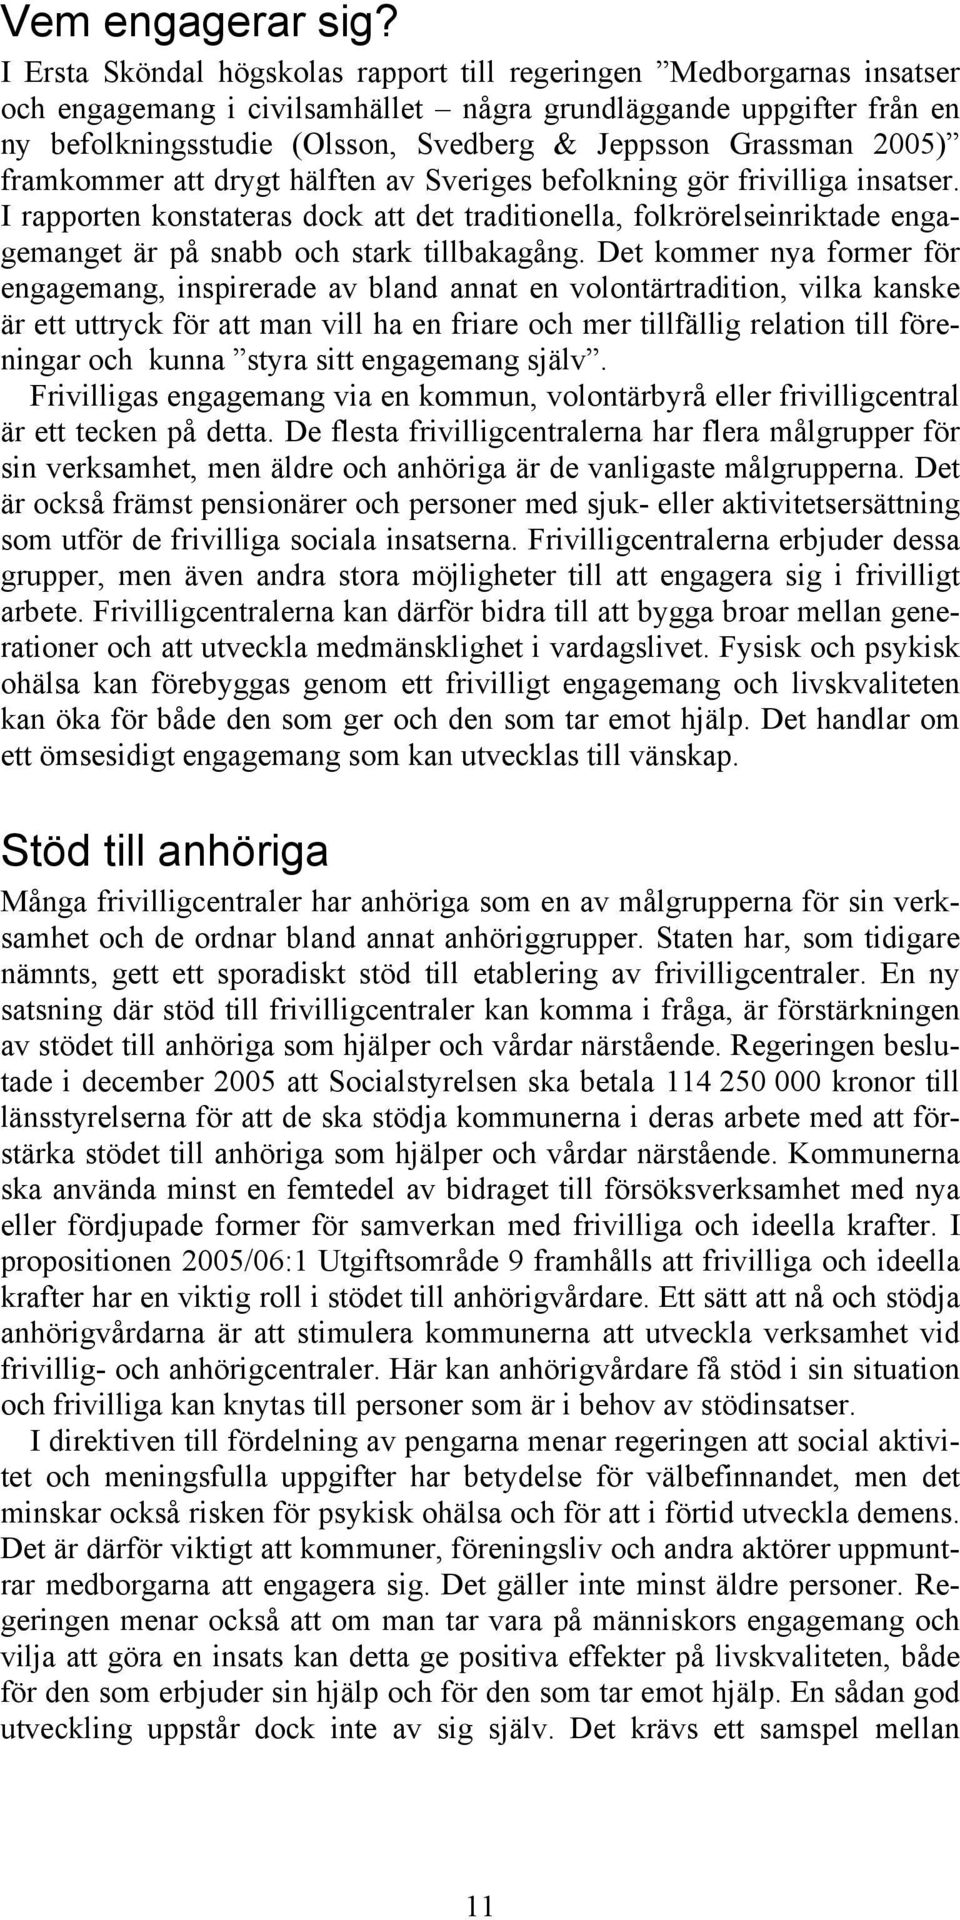 Grassman 2005) framkommer att drygt hälften av Sveriges befolkning gör frivilliga insatser.